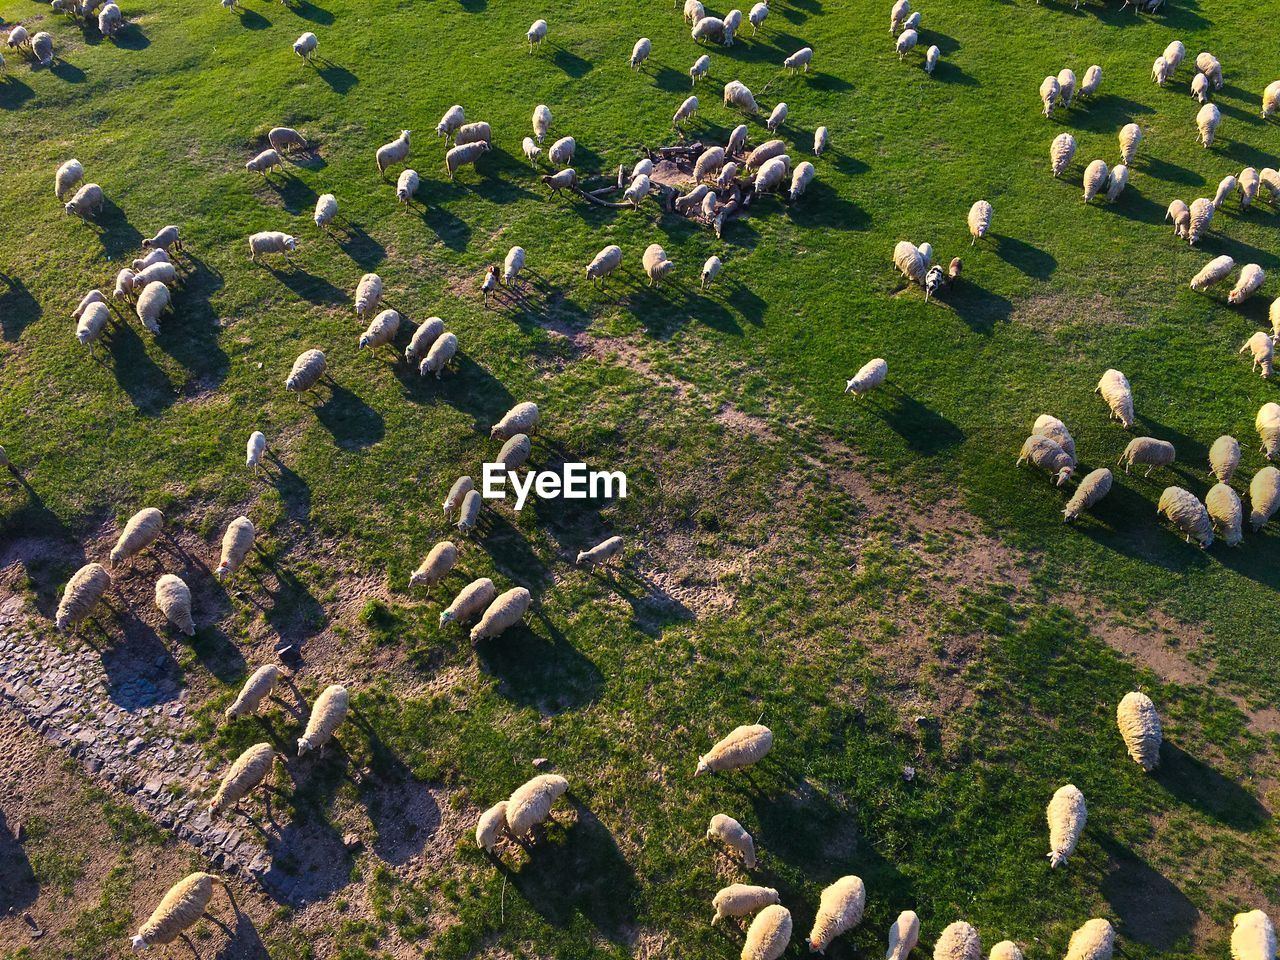 High angle view of sheeps on land